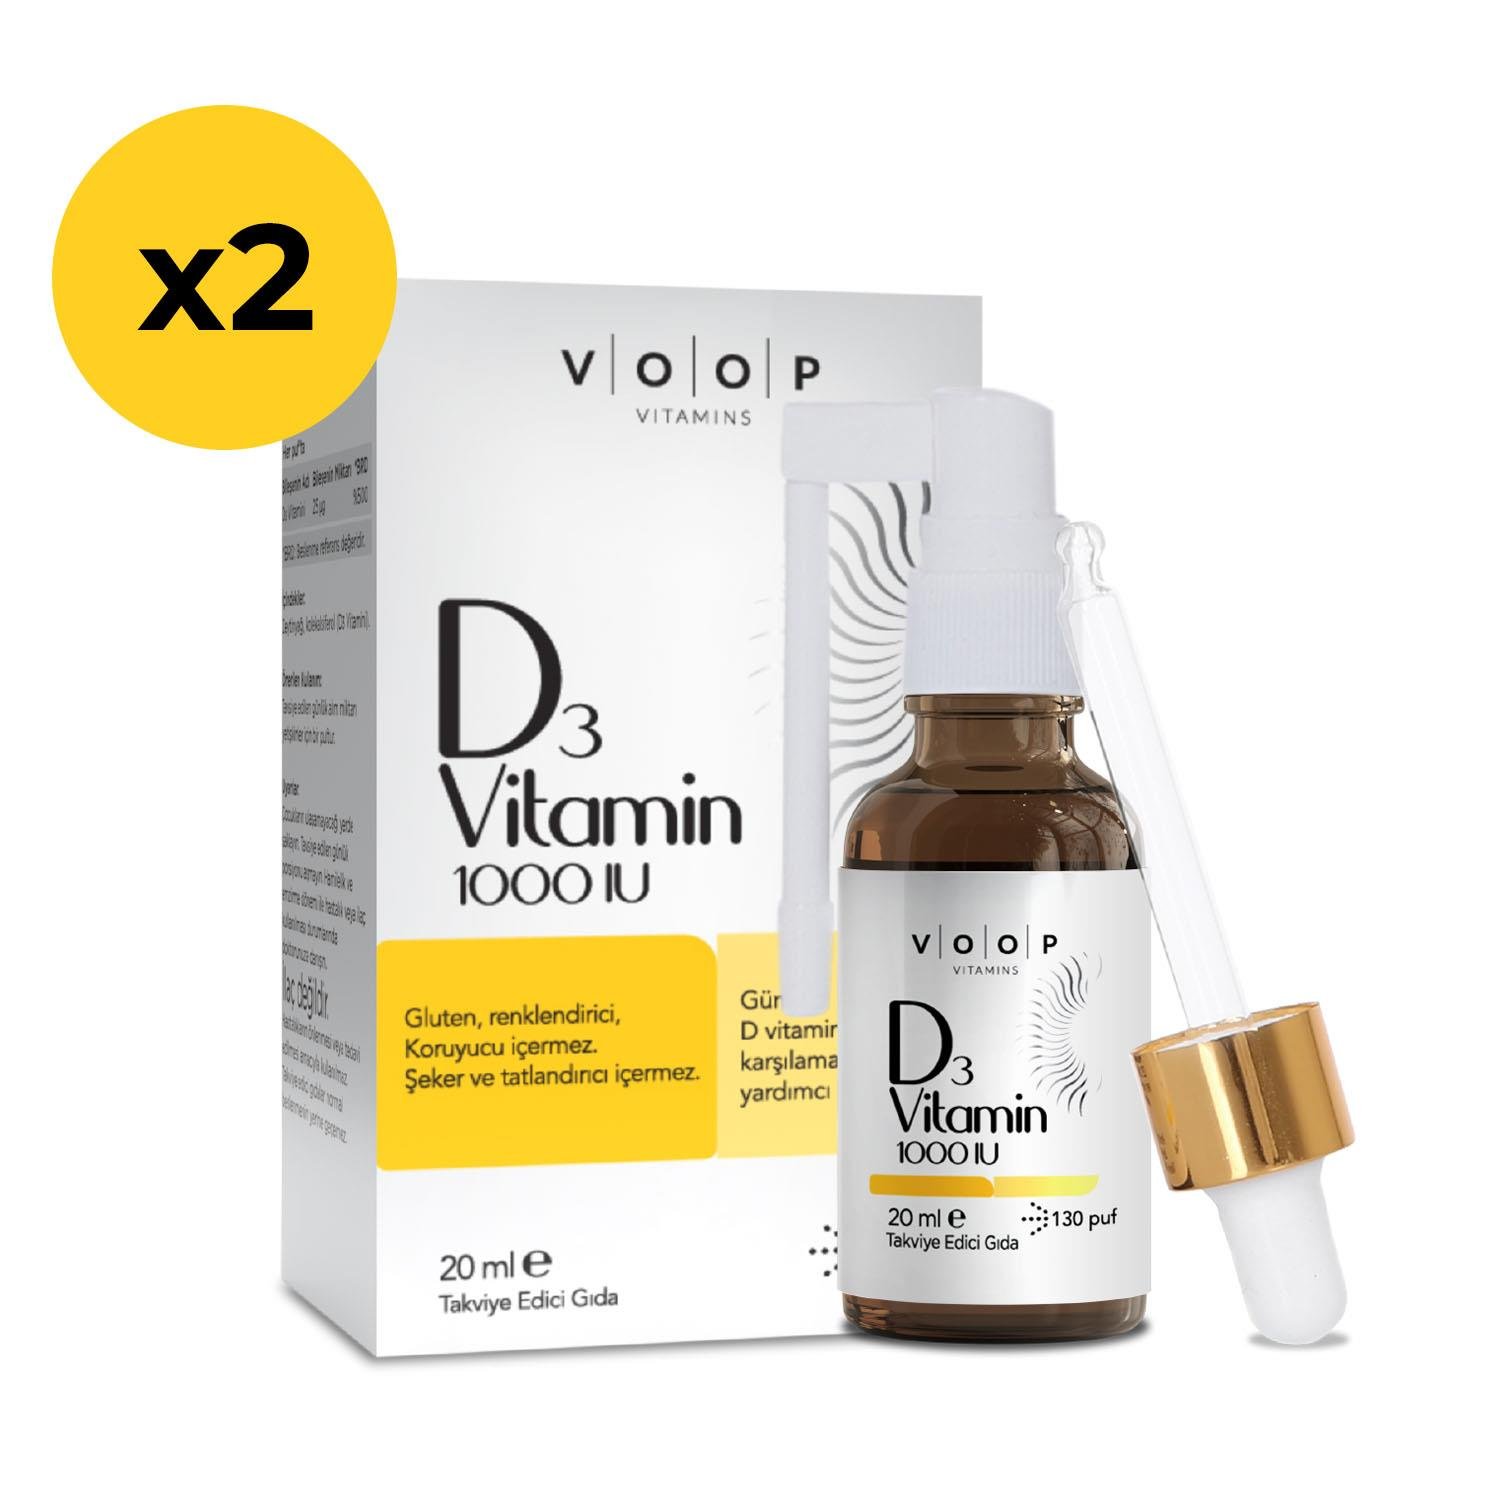 VOOP Vitamin D3 1000 IU Sprey-Damla 20 ml 2 Adet